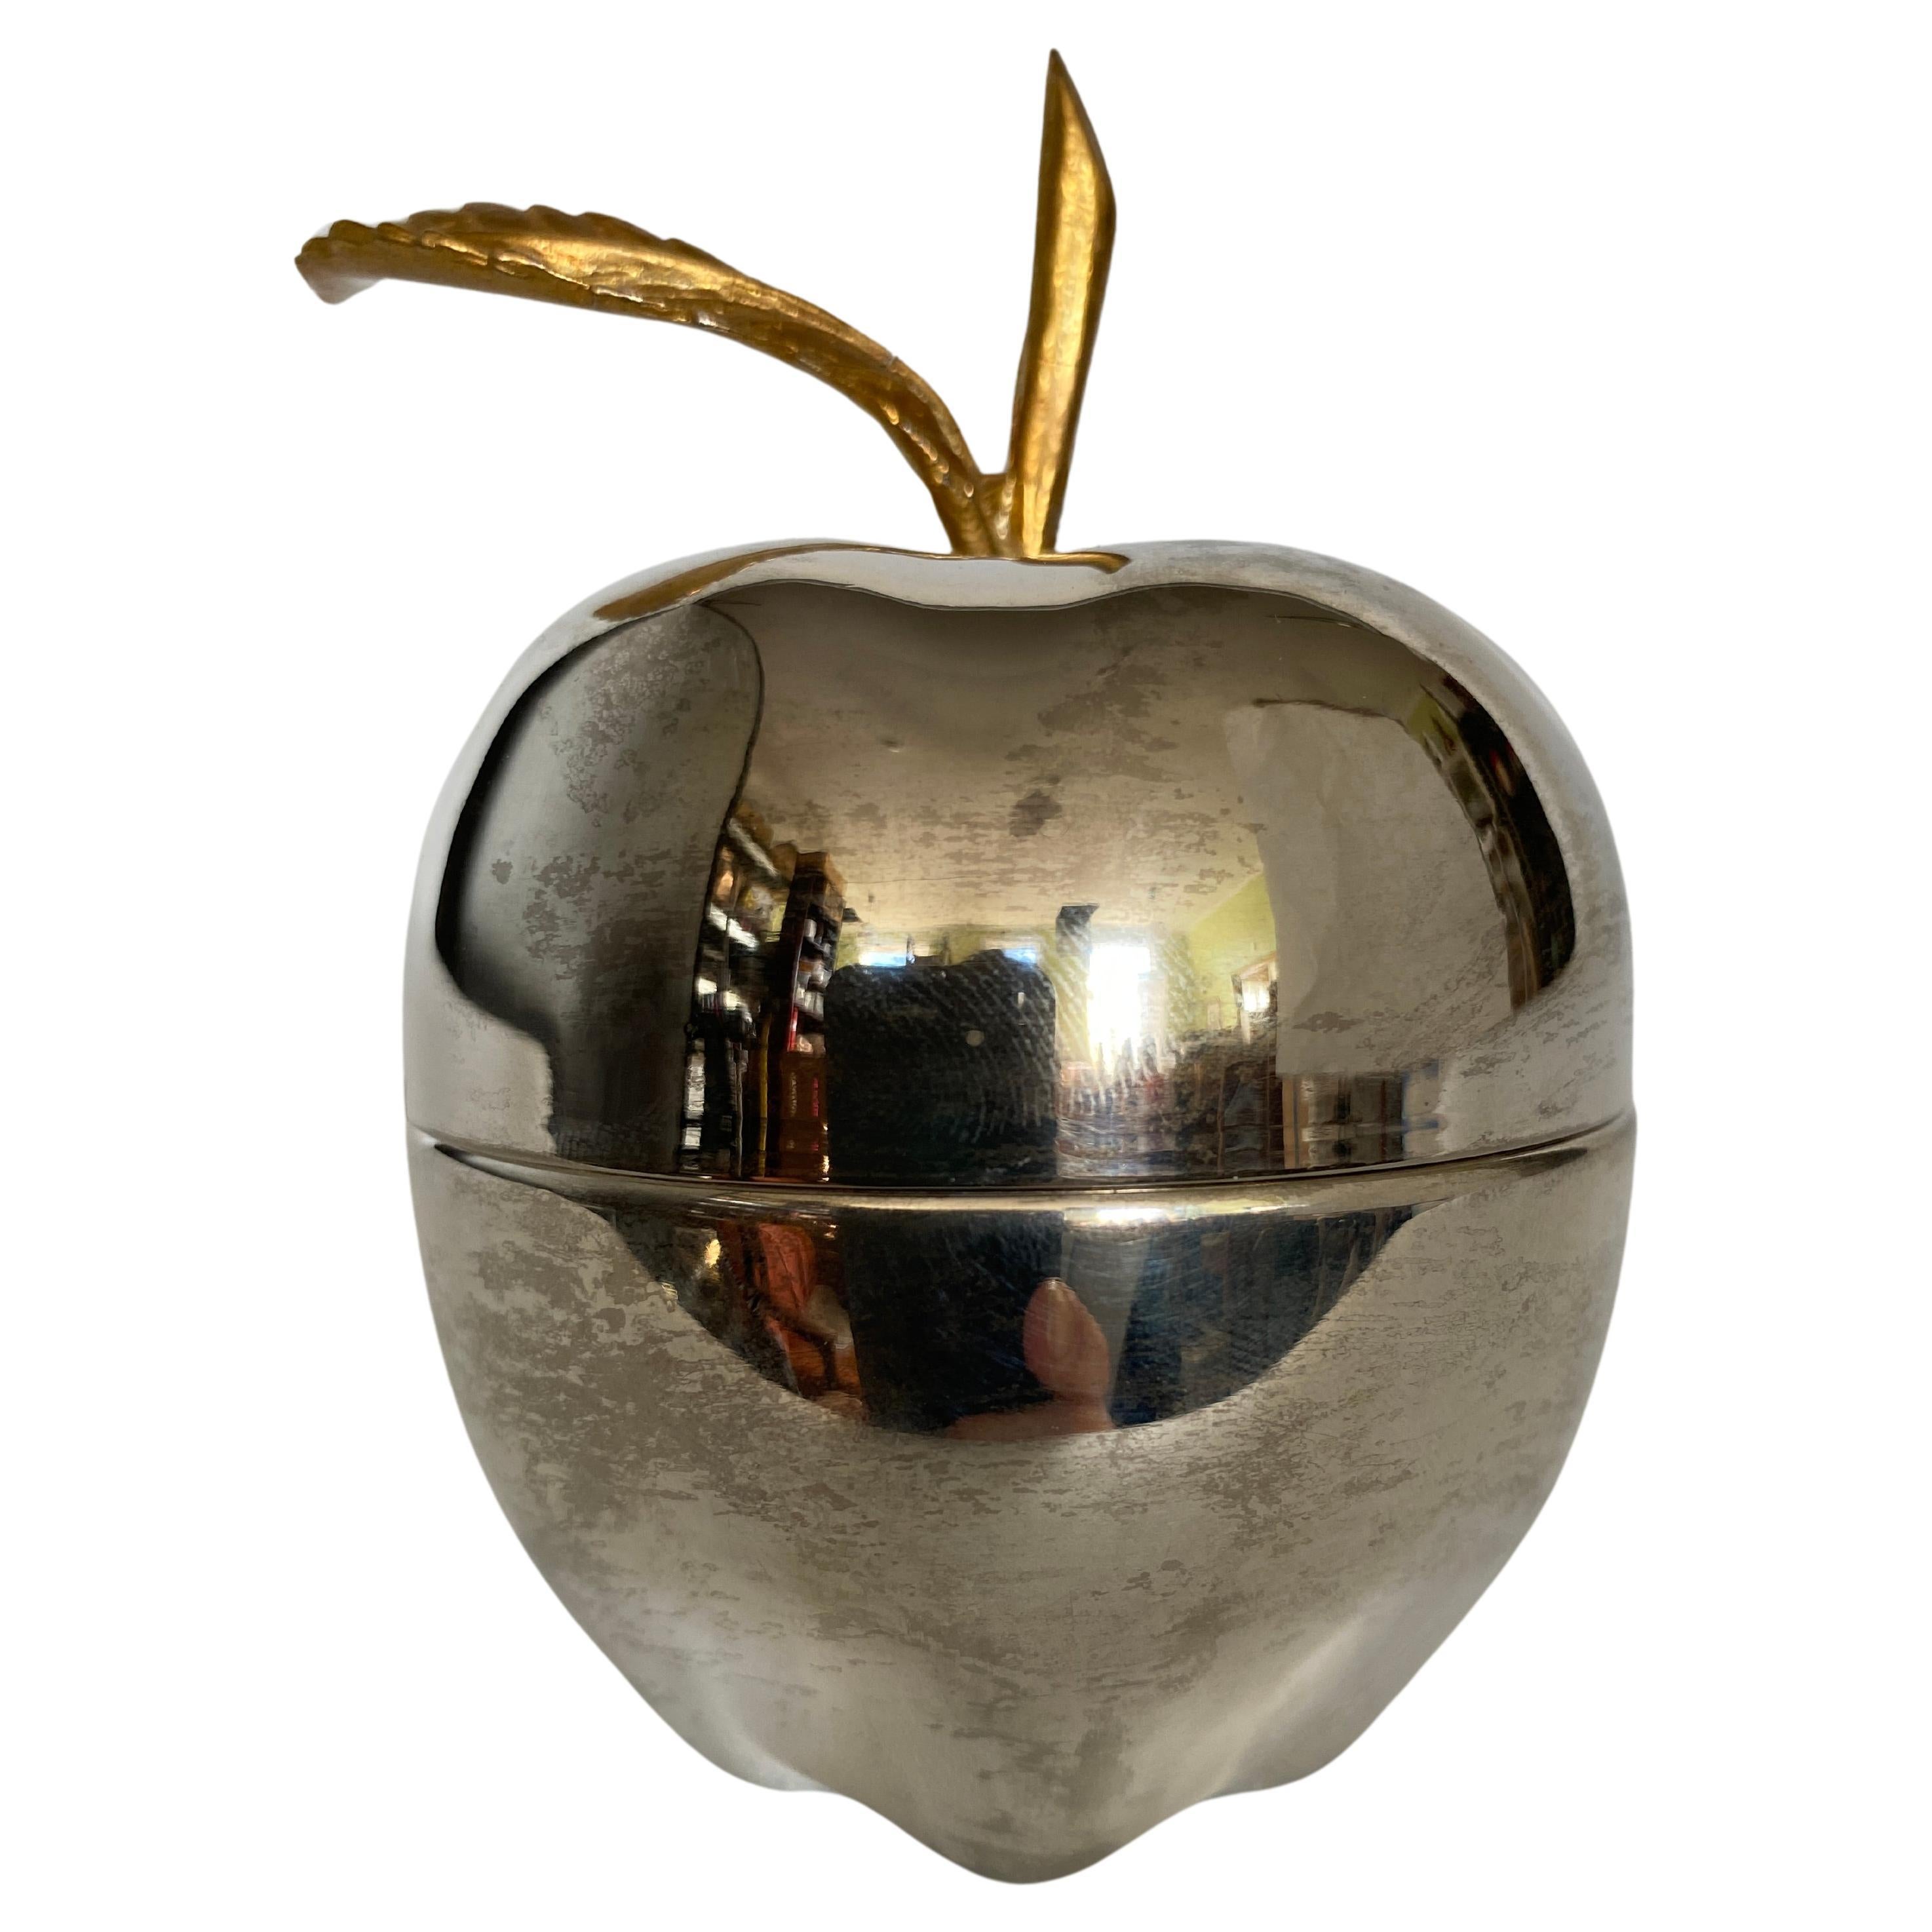 Hübsche Hollywood-Regency-Schmuckdose oder Bonbonniere in Form eines Apfels. Der Apfel ist versilbert und das Blatt und der Branch sind aus Messing. 
Die Apfelkiste wurde poliert. 
Die letzten 2 Bilder zeigen die Apfeldose vor dem Polieren, mit der